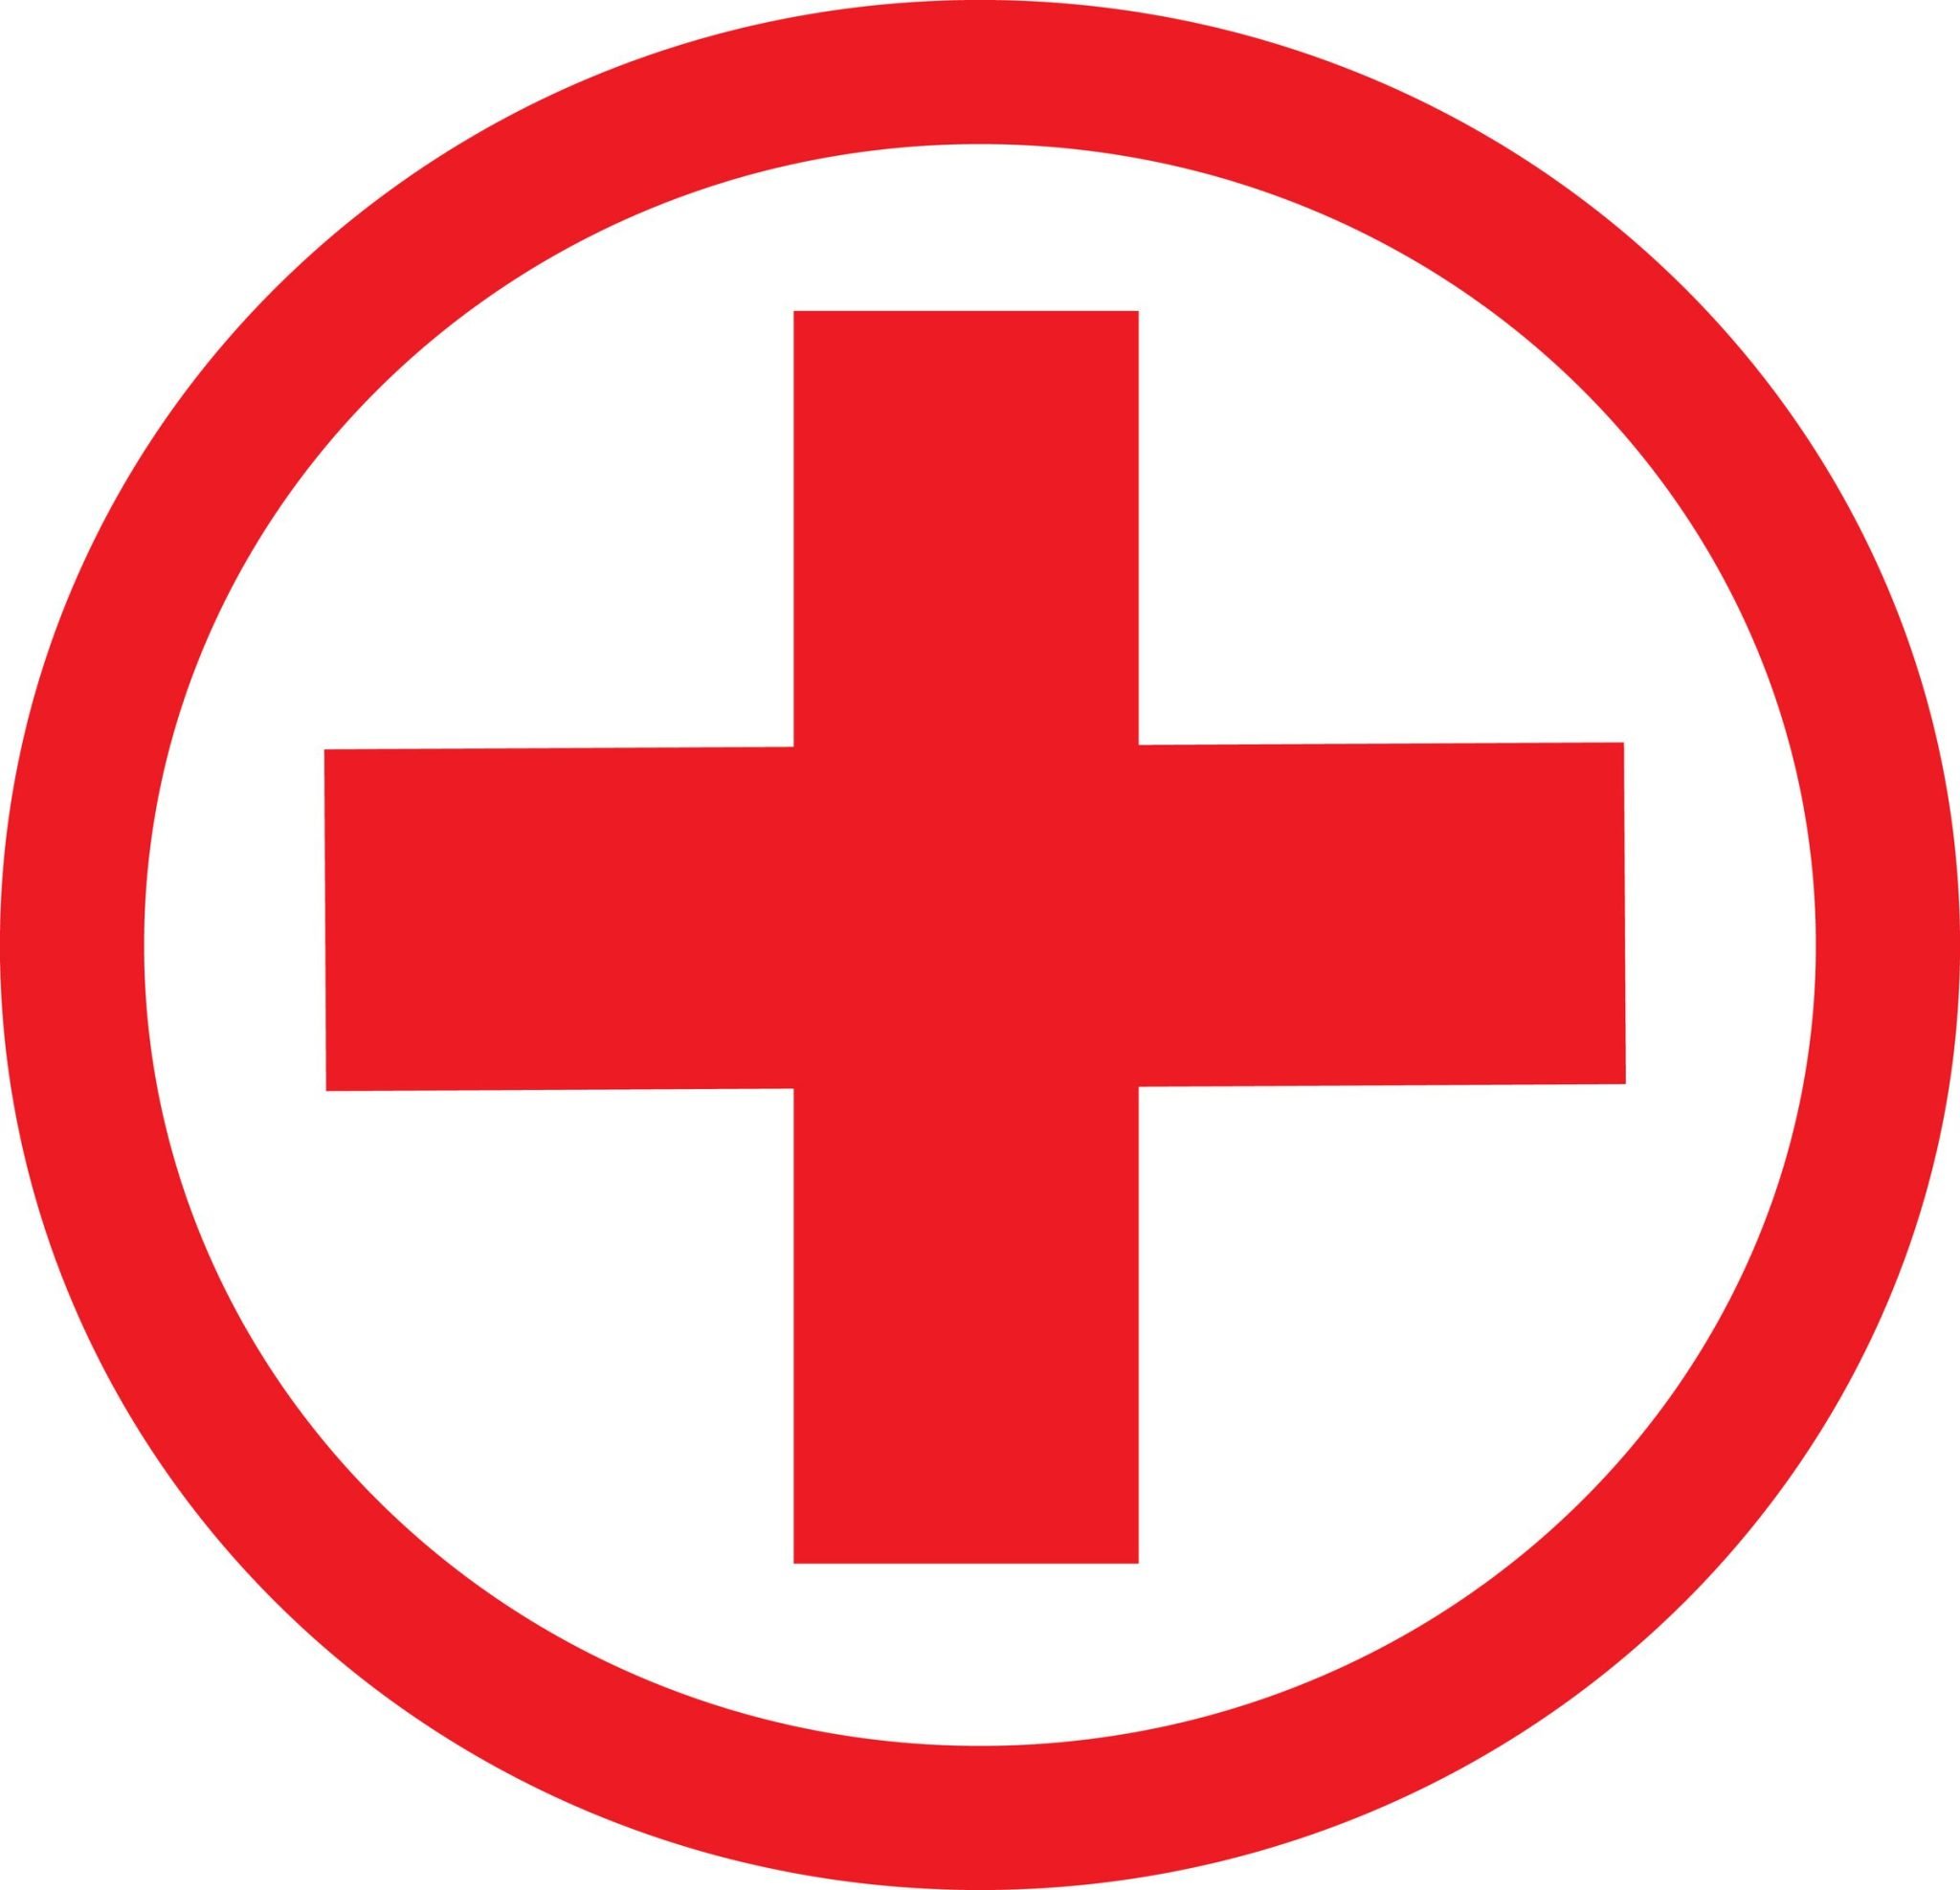 Красный крест поликлиника телефон. Красный крест. Медицина крест. Значок скорой помощи. Красный крест медицинский.